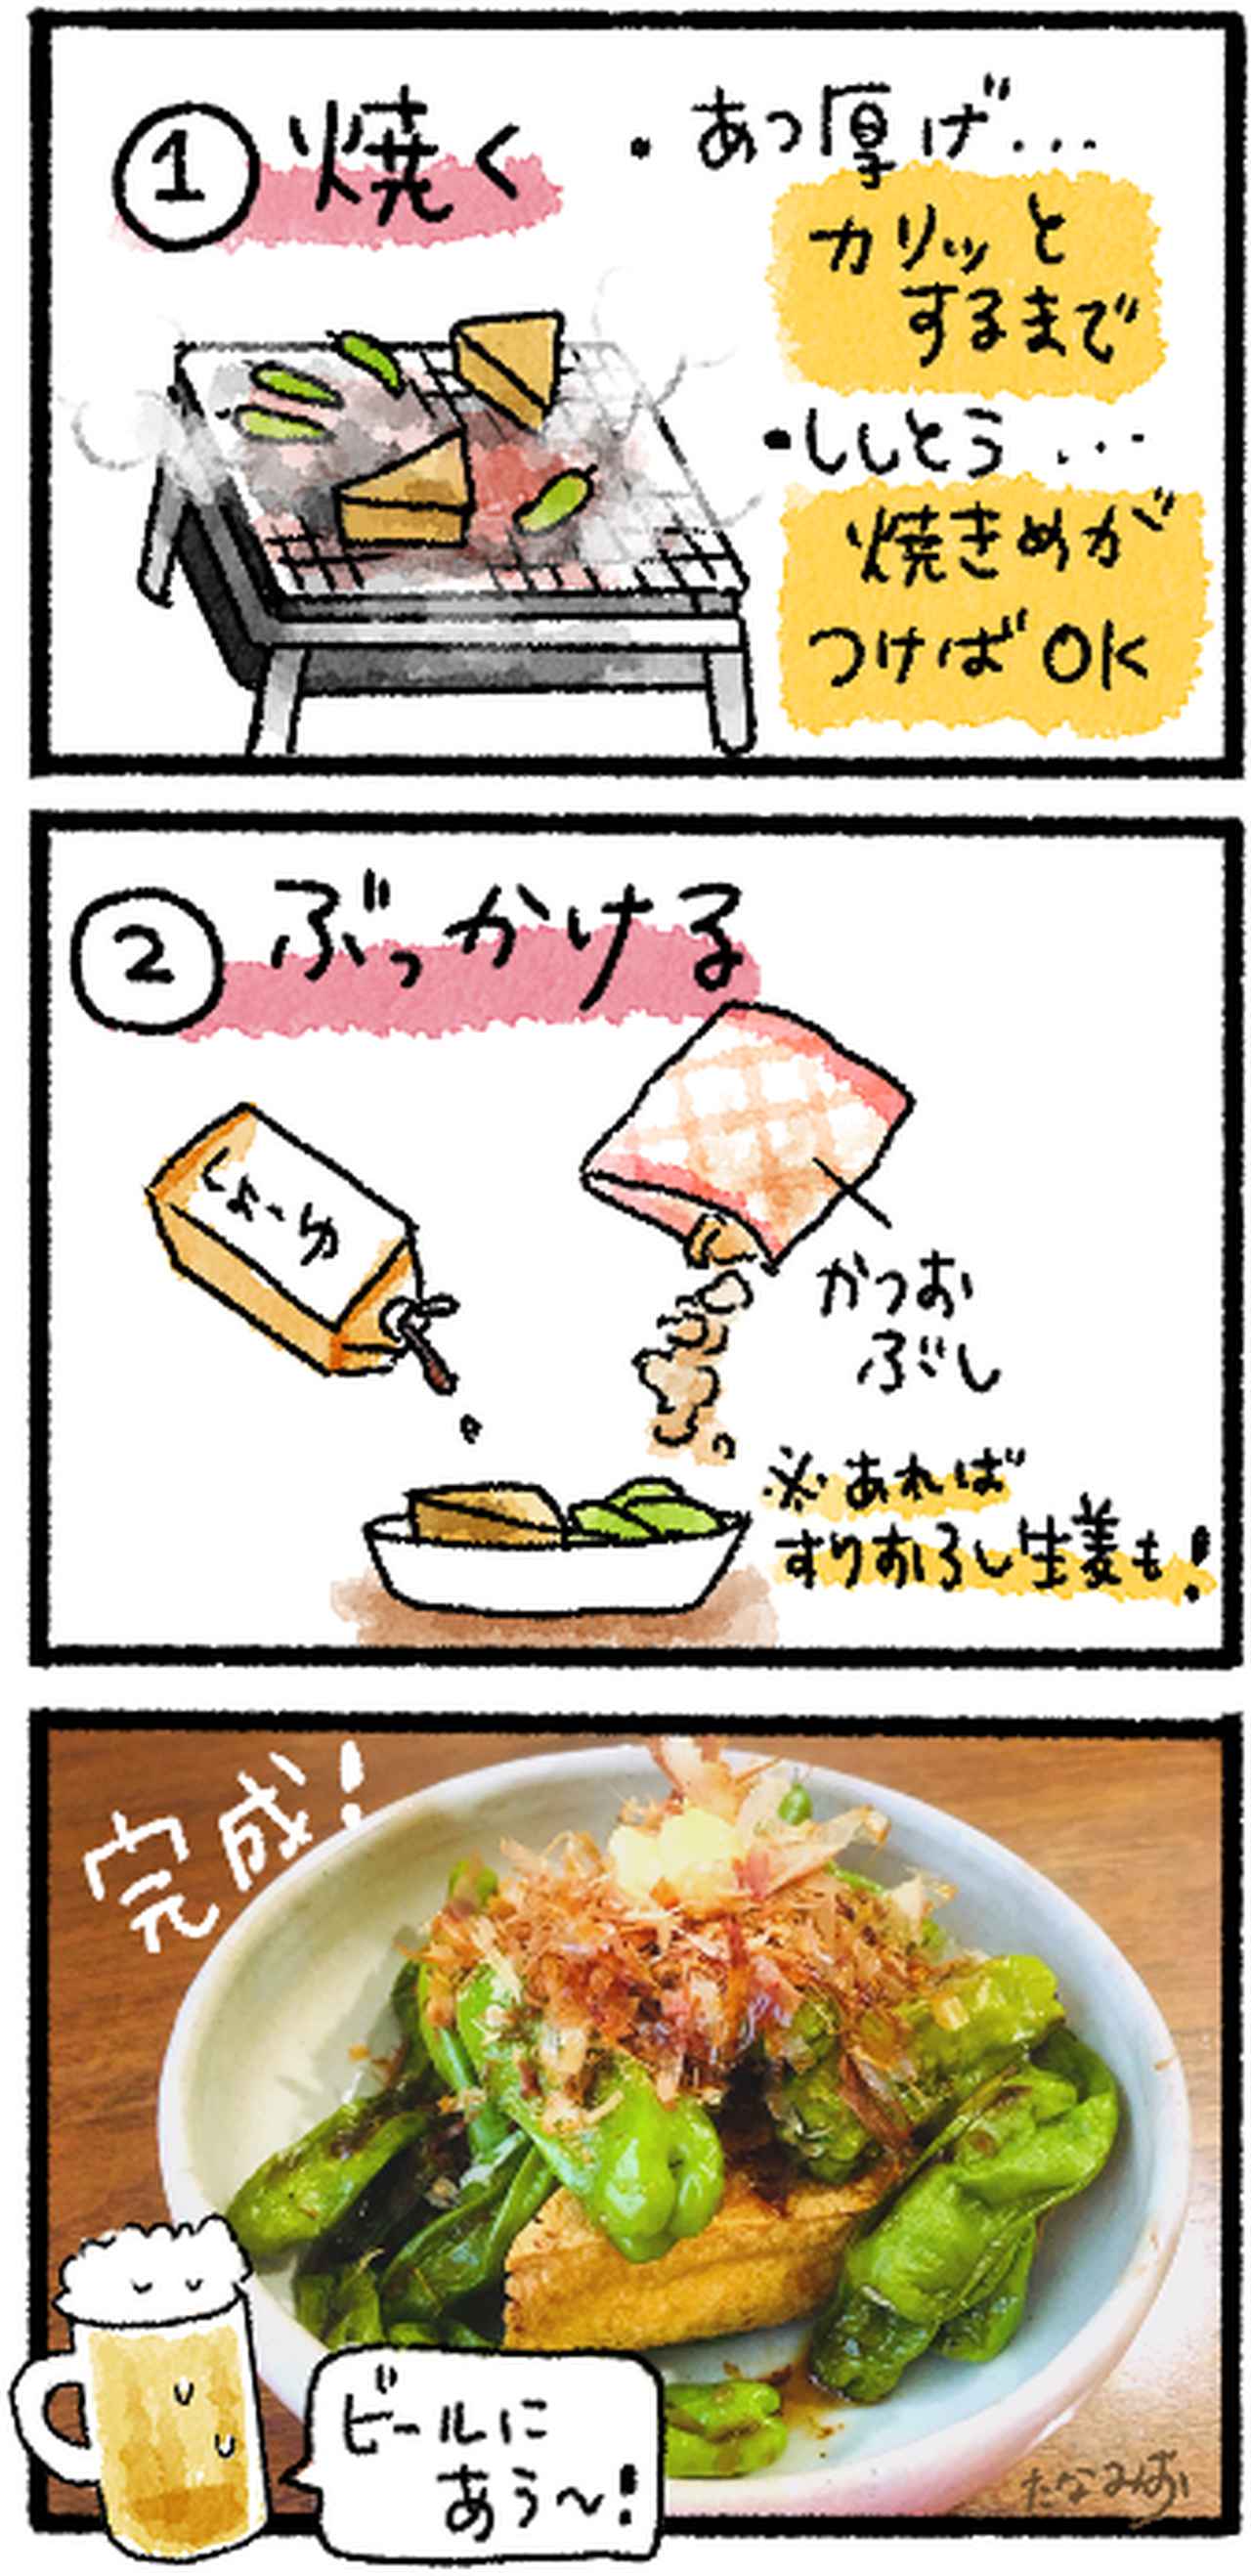 夏野菜レシピ 栄養たっぷり ししとうの食べ方4選 簡単キャンプ飯 おつまみにも お役立ちキャンプ情報 年07月日 日本気象協会 Tenki Jp